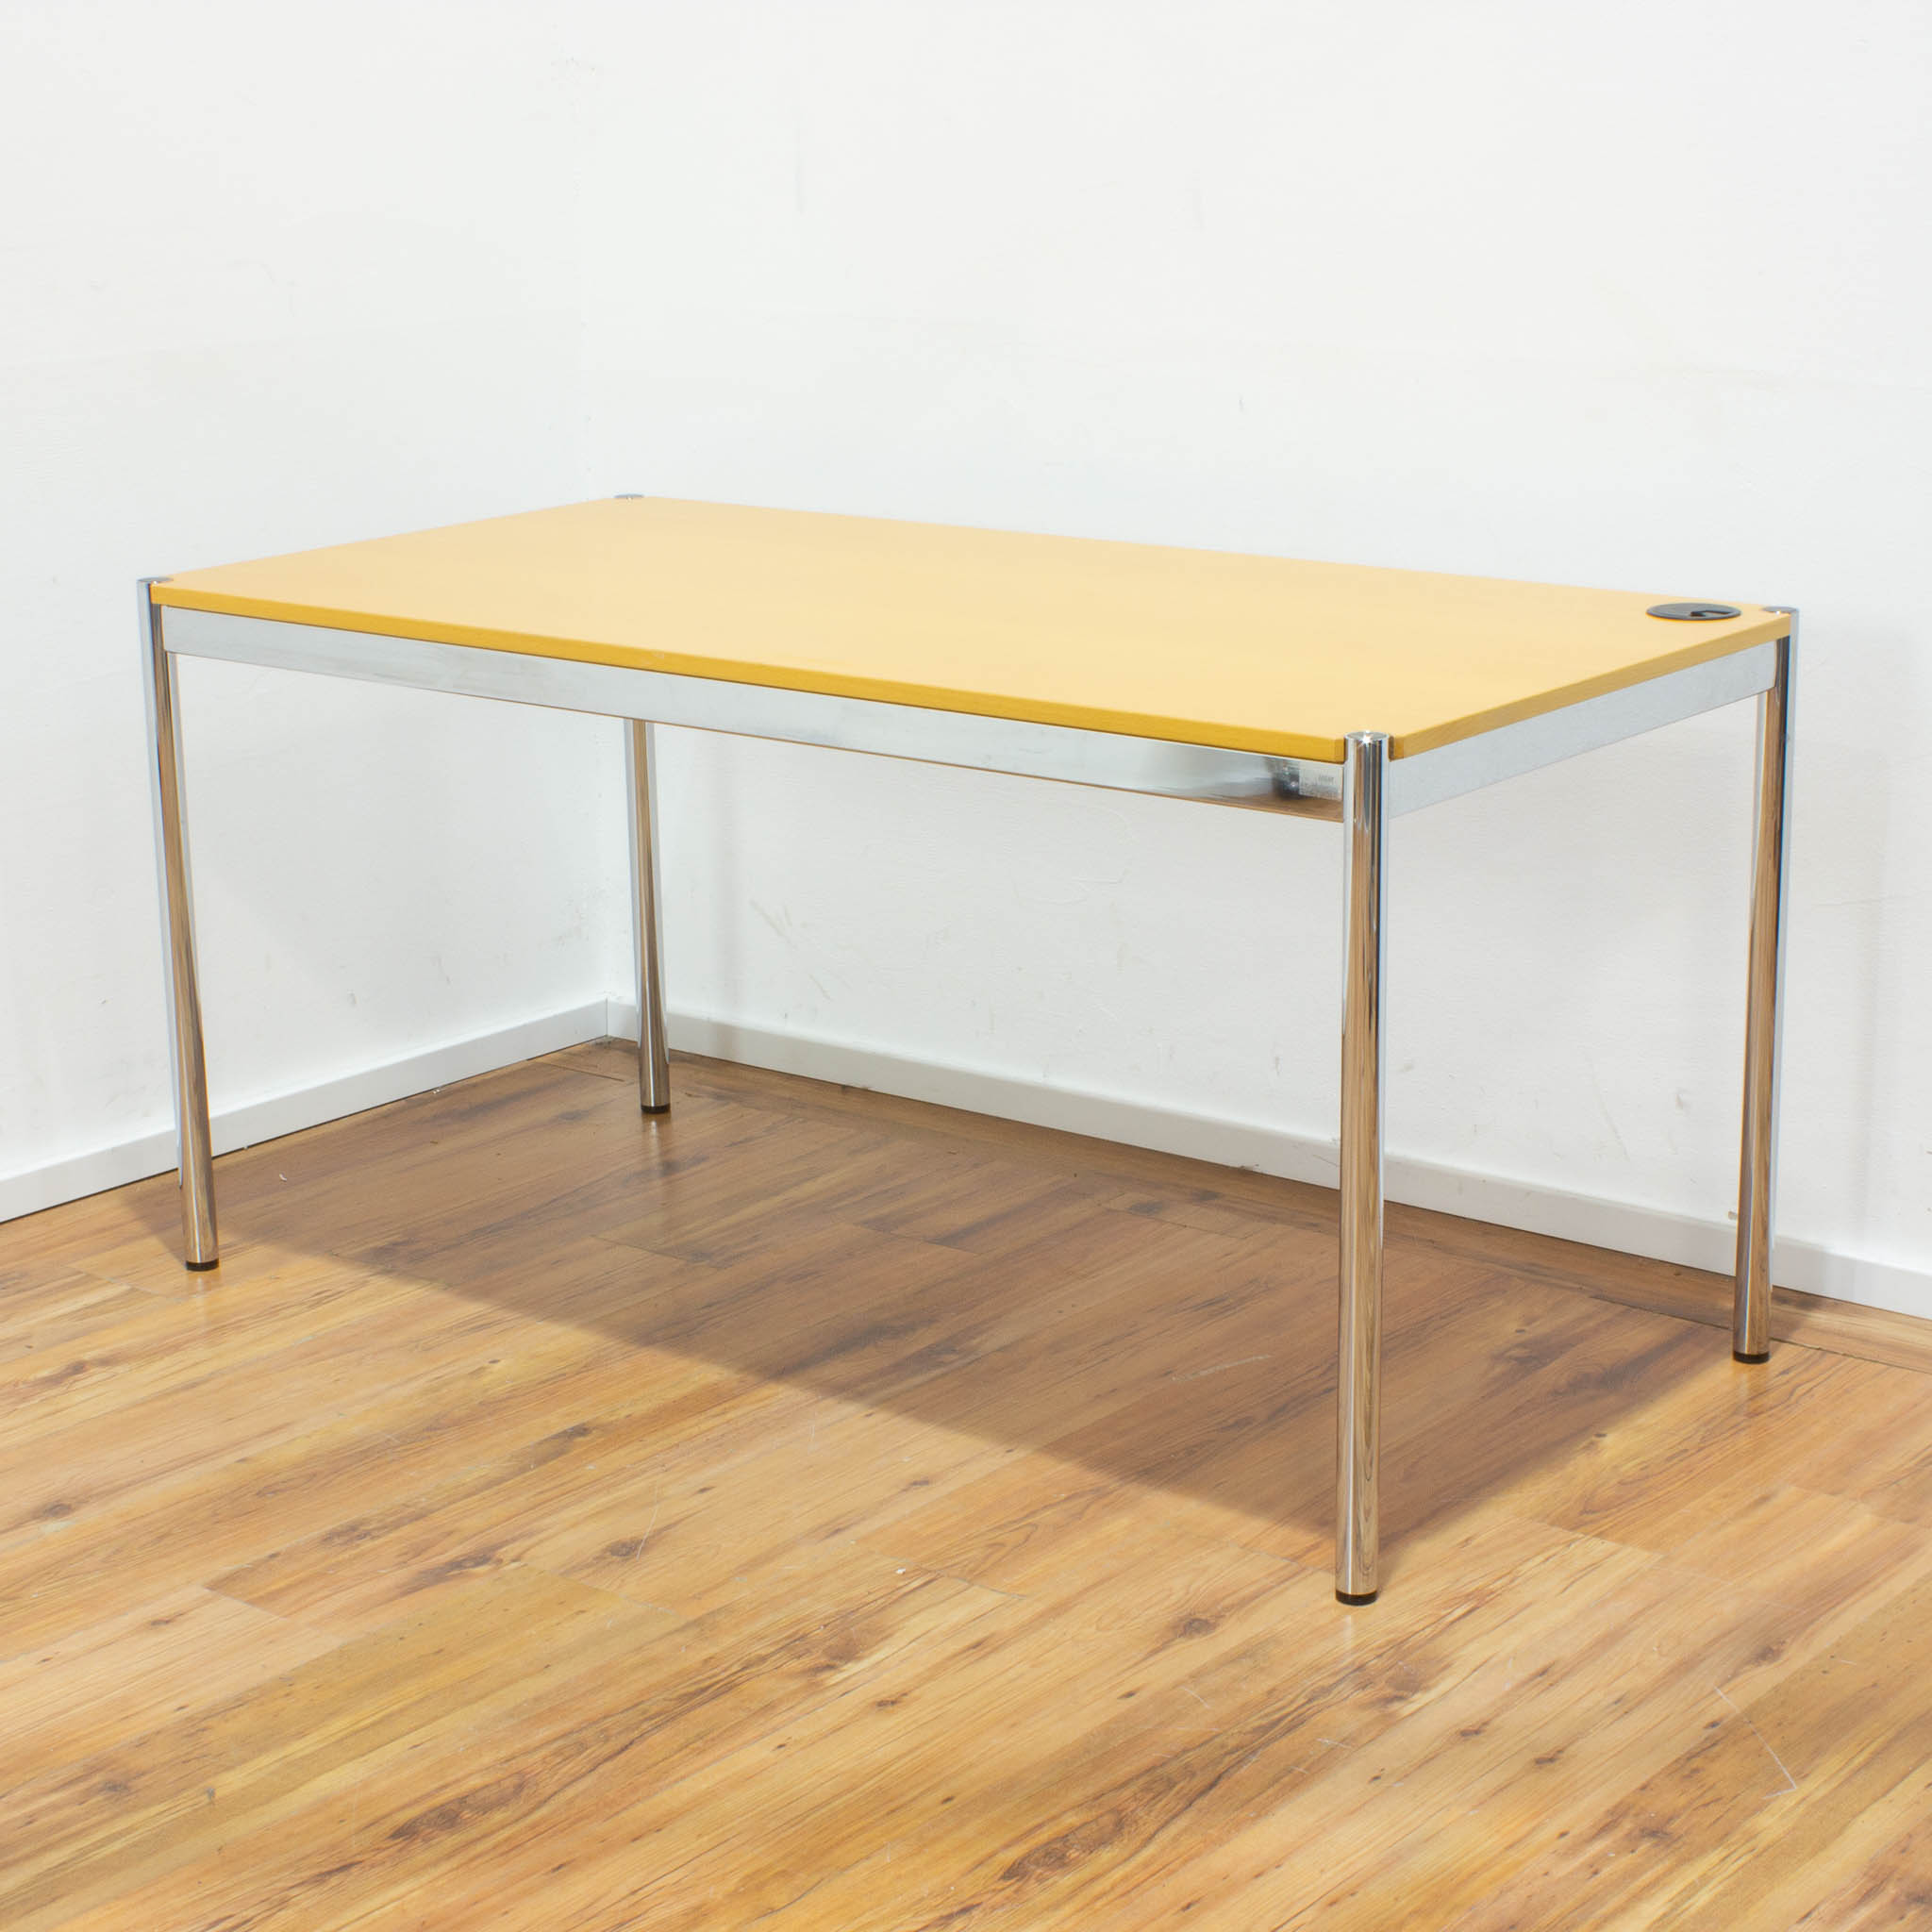 USM Haller Schreibtisch - Tischplatte buche mit Kabeldurchlass gebraucht - 150 x 75 cm